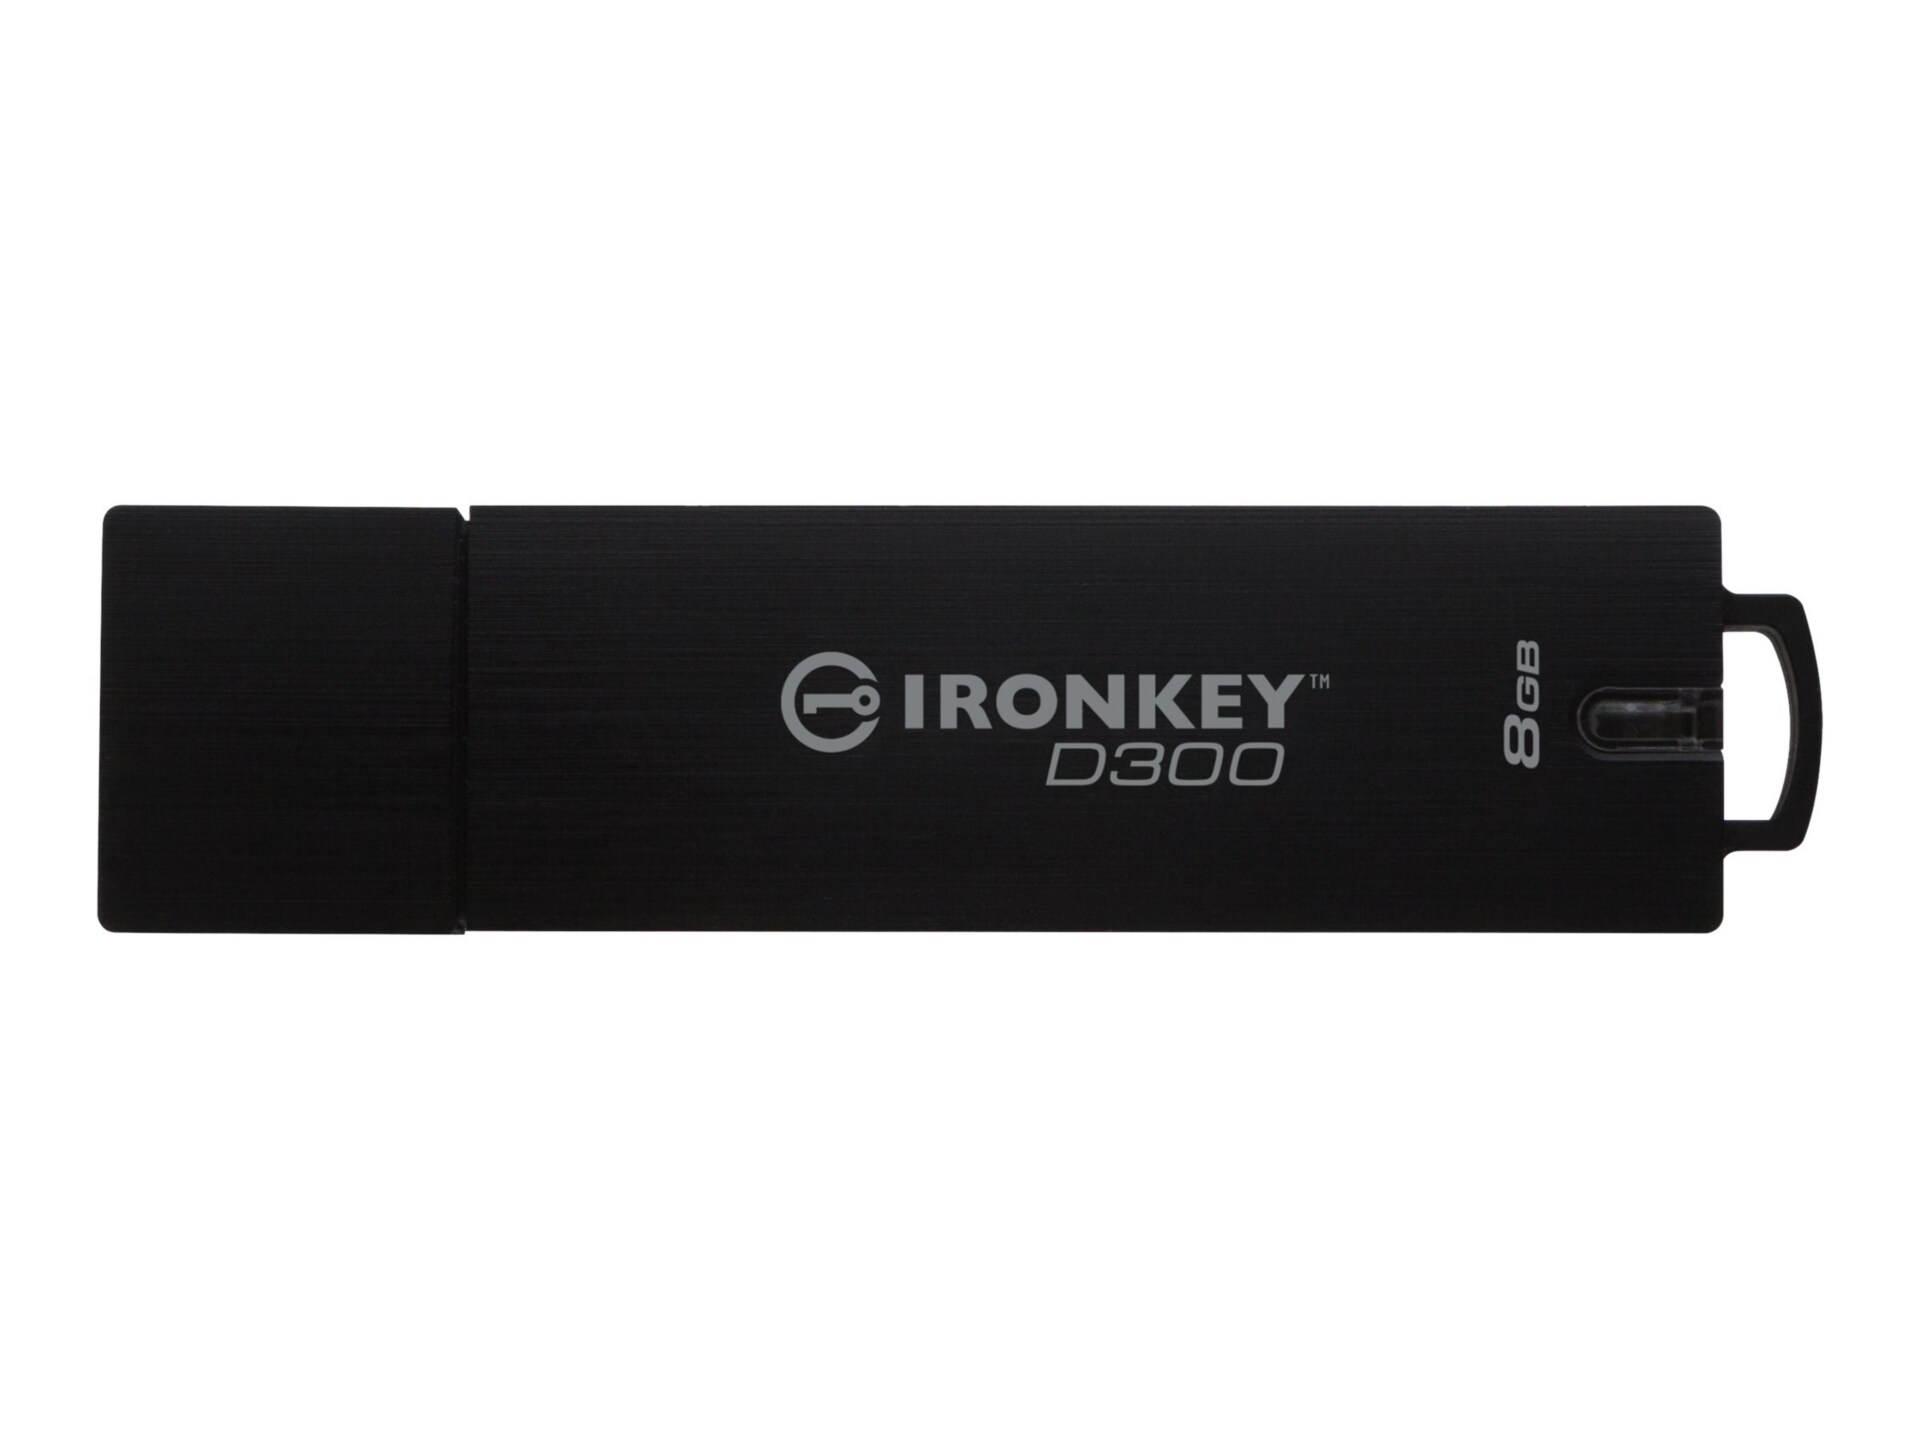 IronKey D300 - USB flash drive - 8 GB